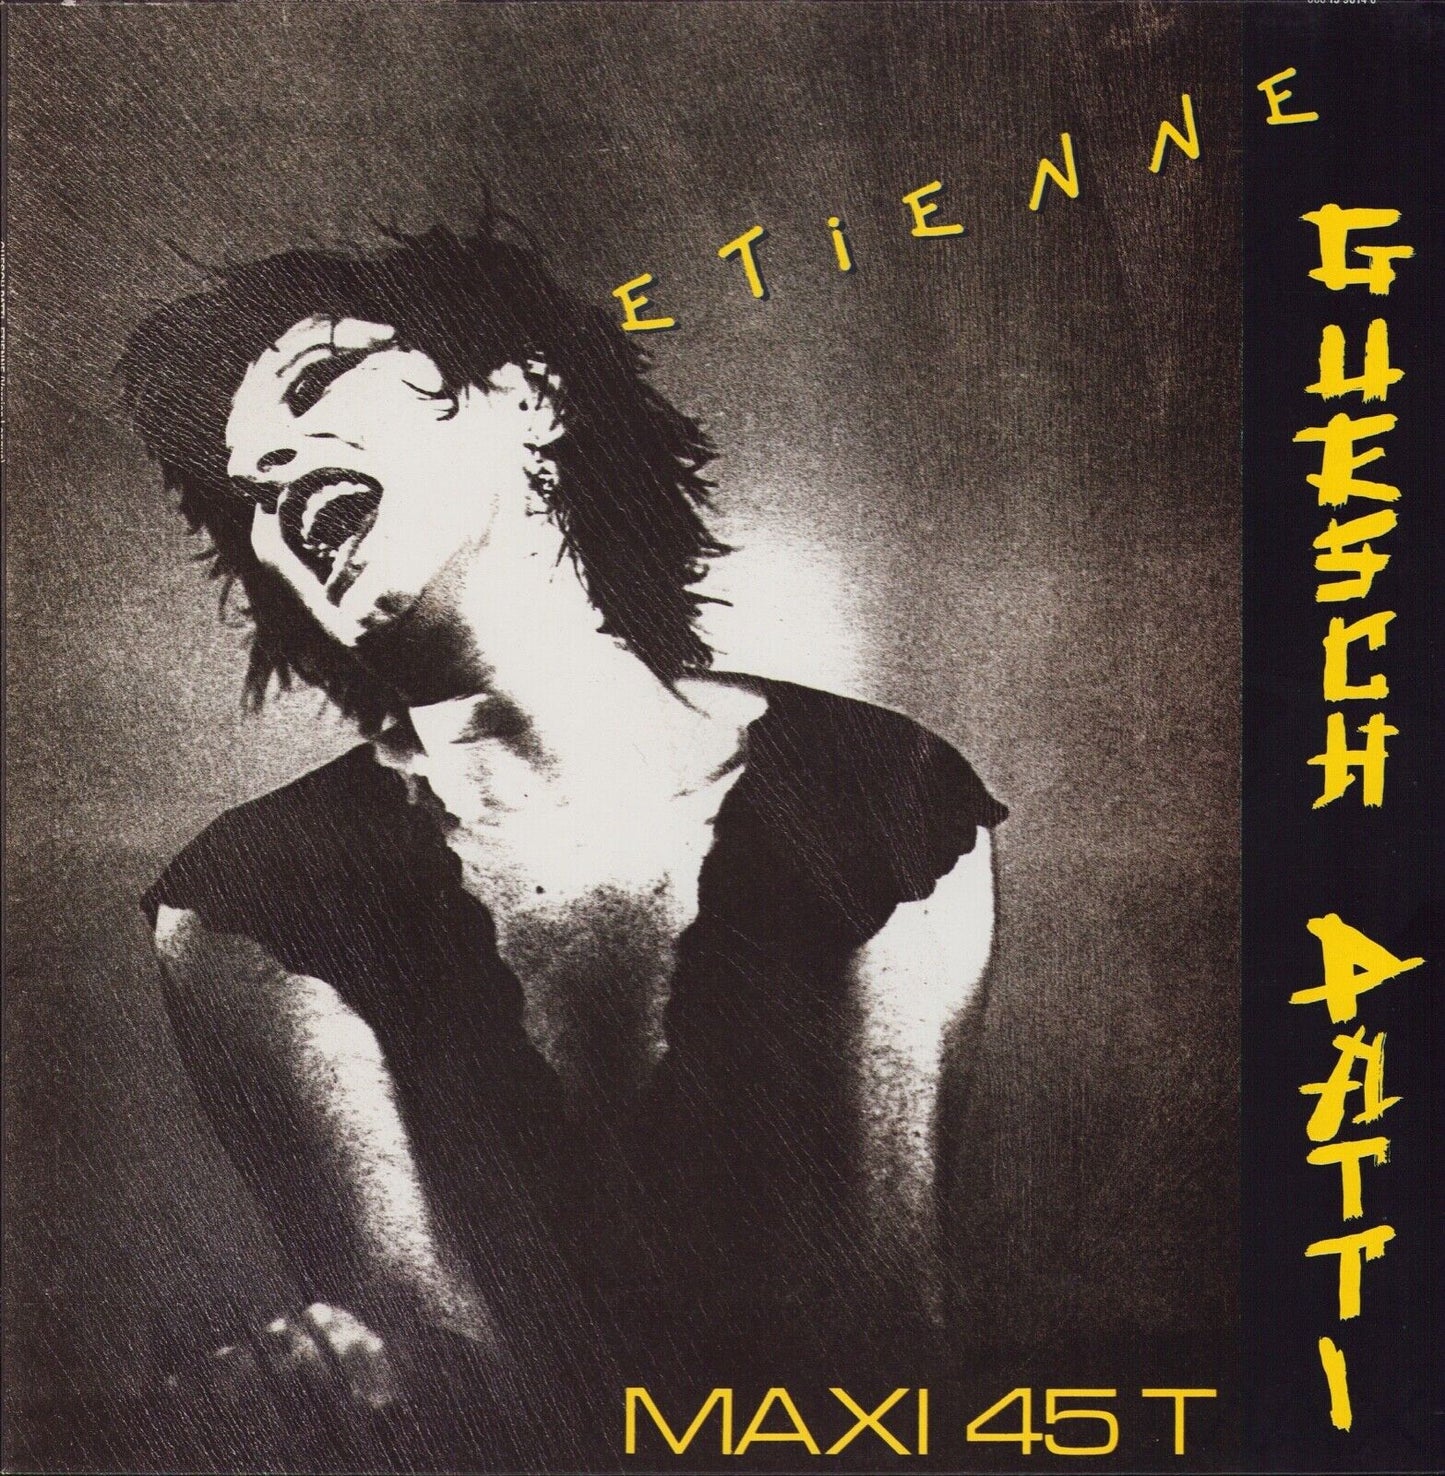 Guesch Patti ‎– Etienne Vinyl 12"